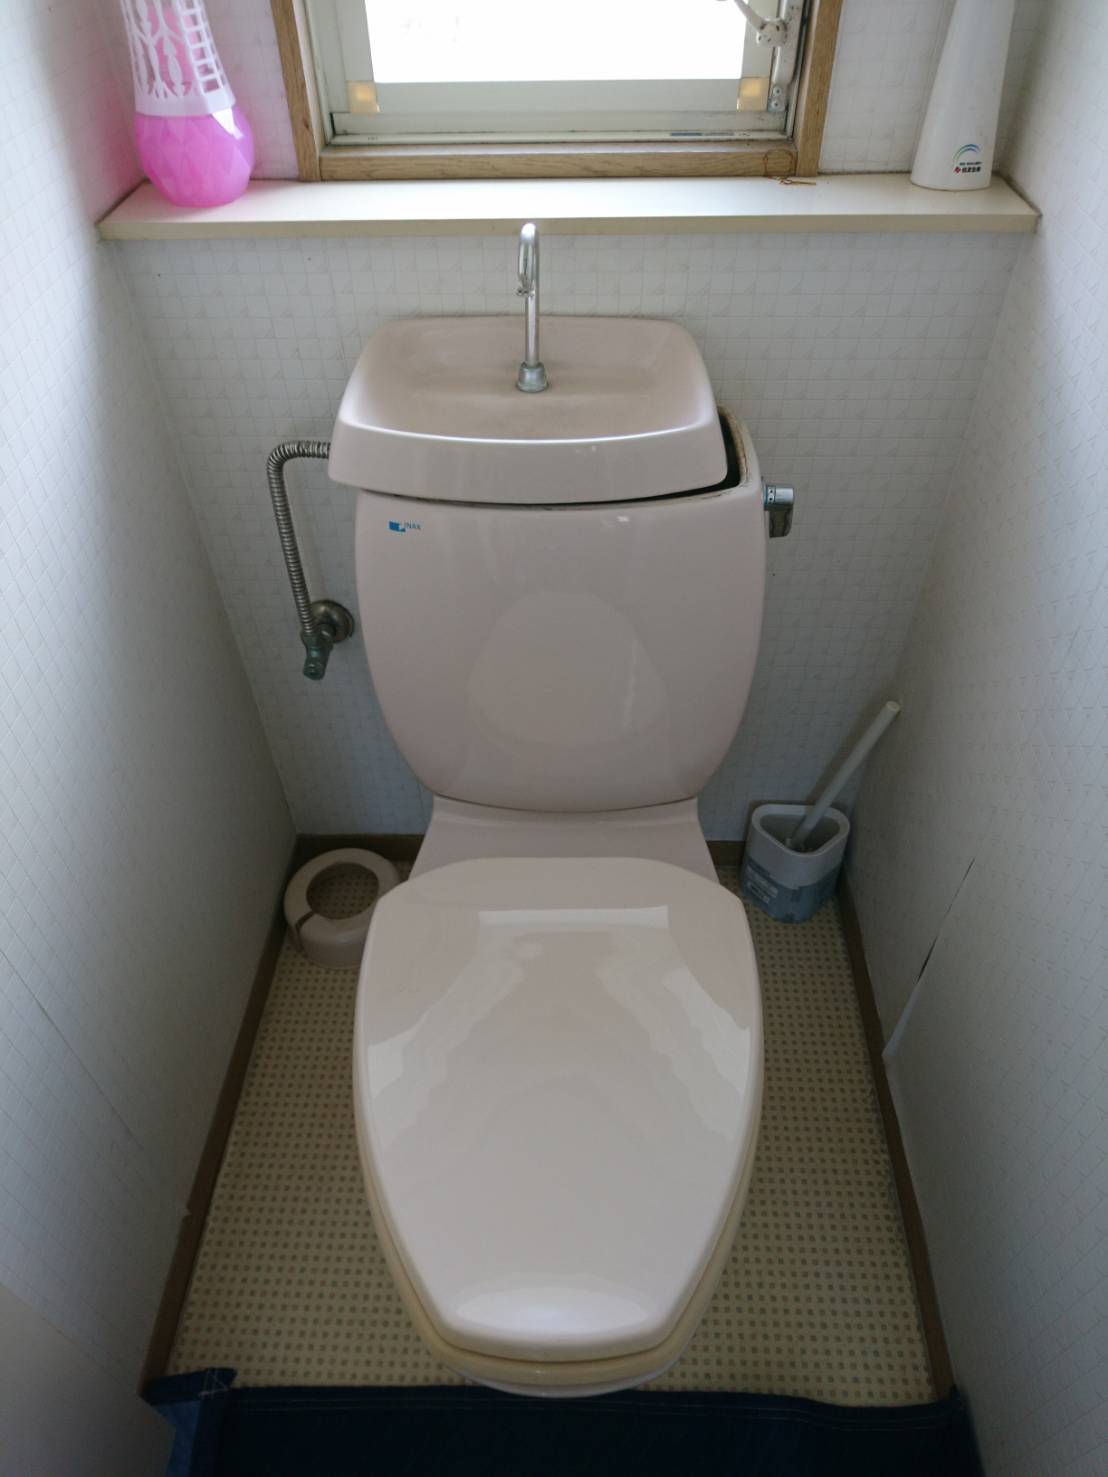 【長崎県佐世保市棚方町】トイレタンクから水が漏れてきた。トイレ交換。 【公式】水漏れ・つまりを修理するなら【水の